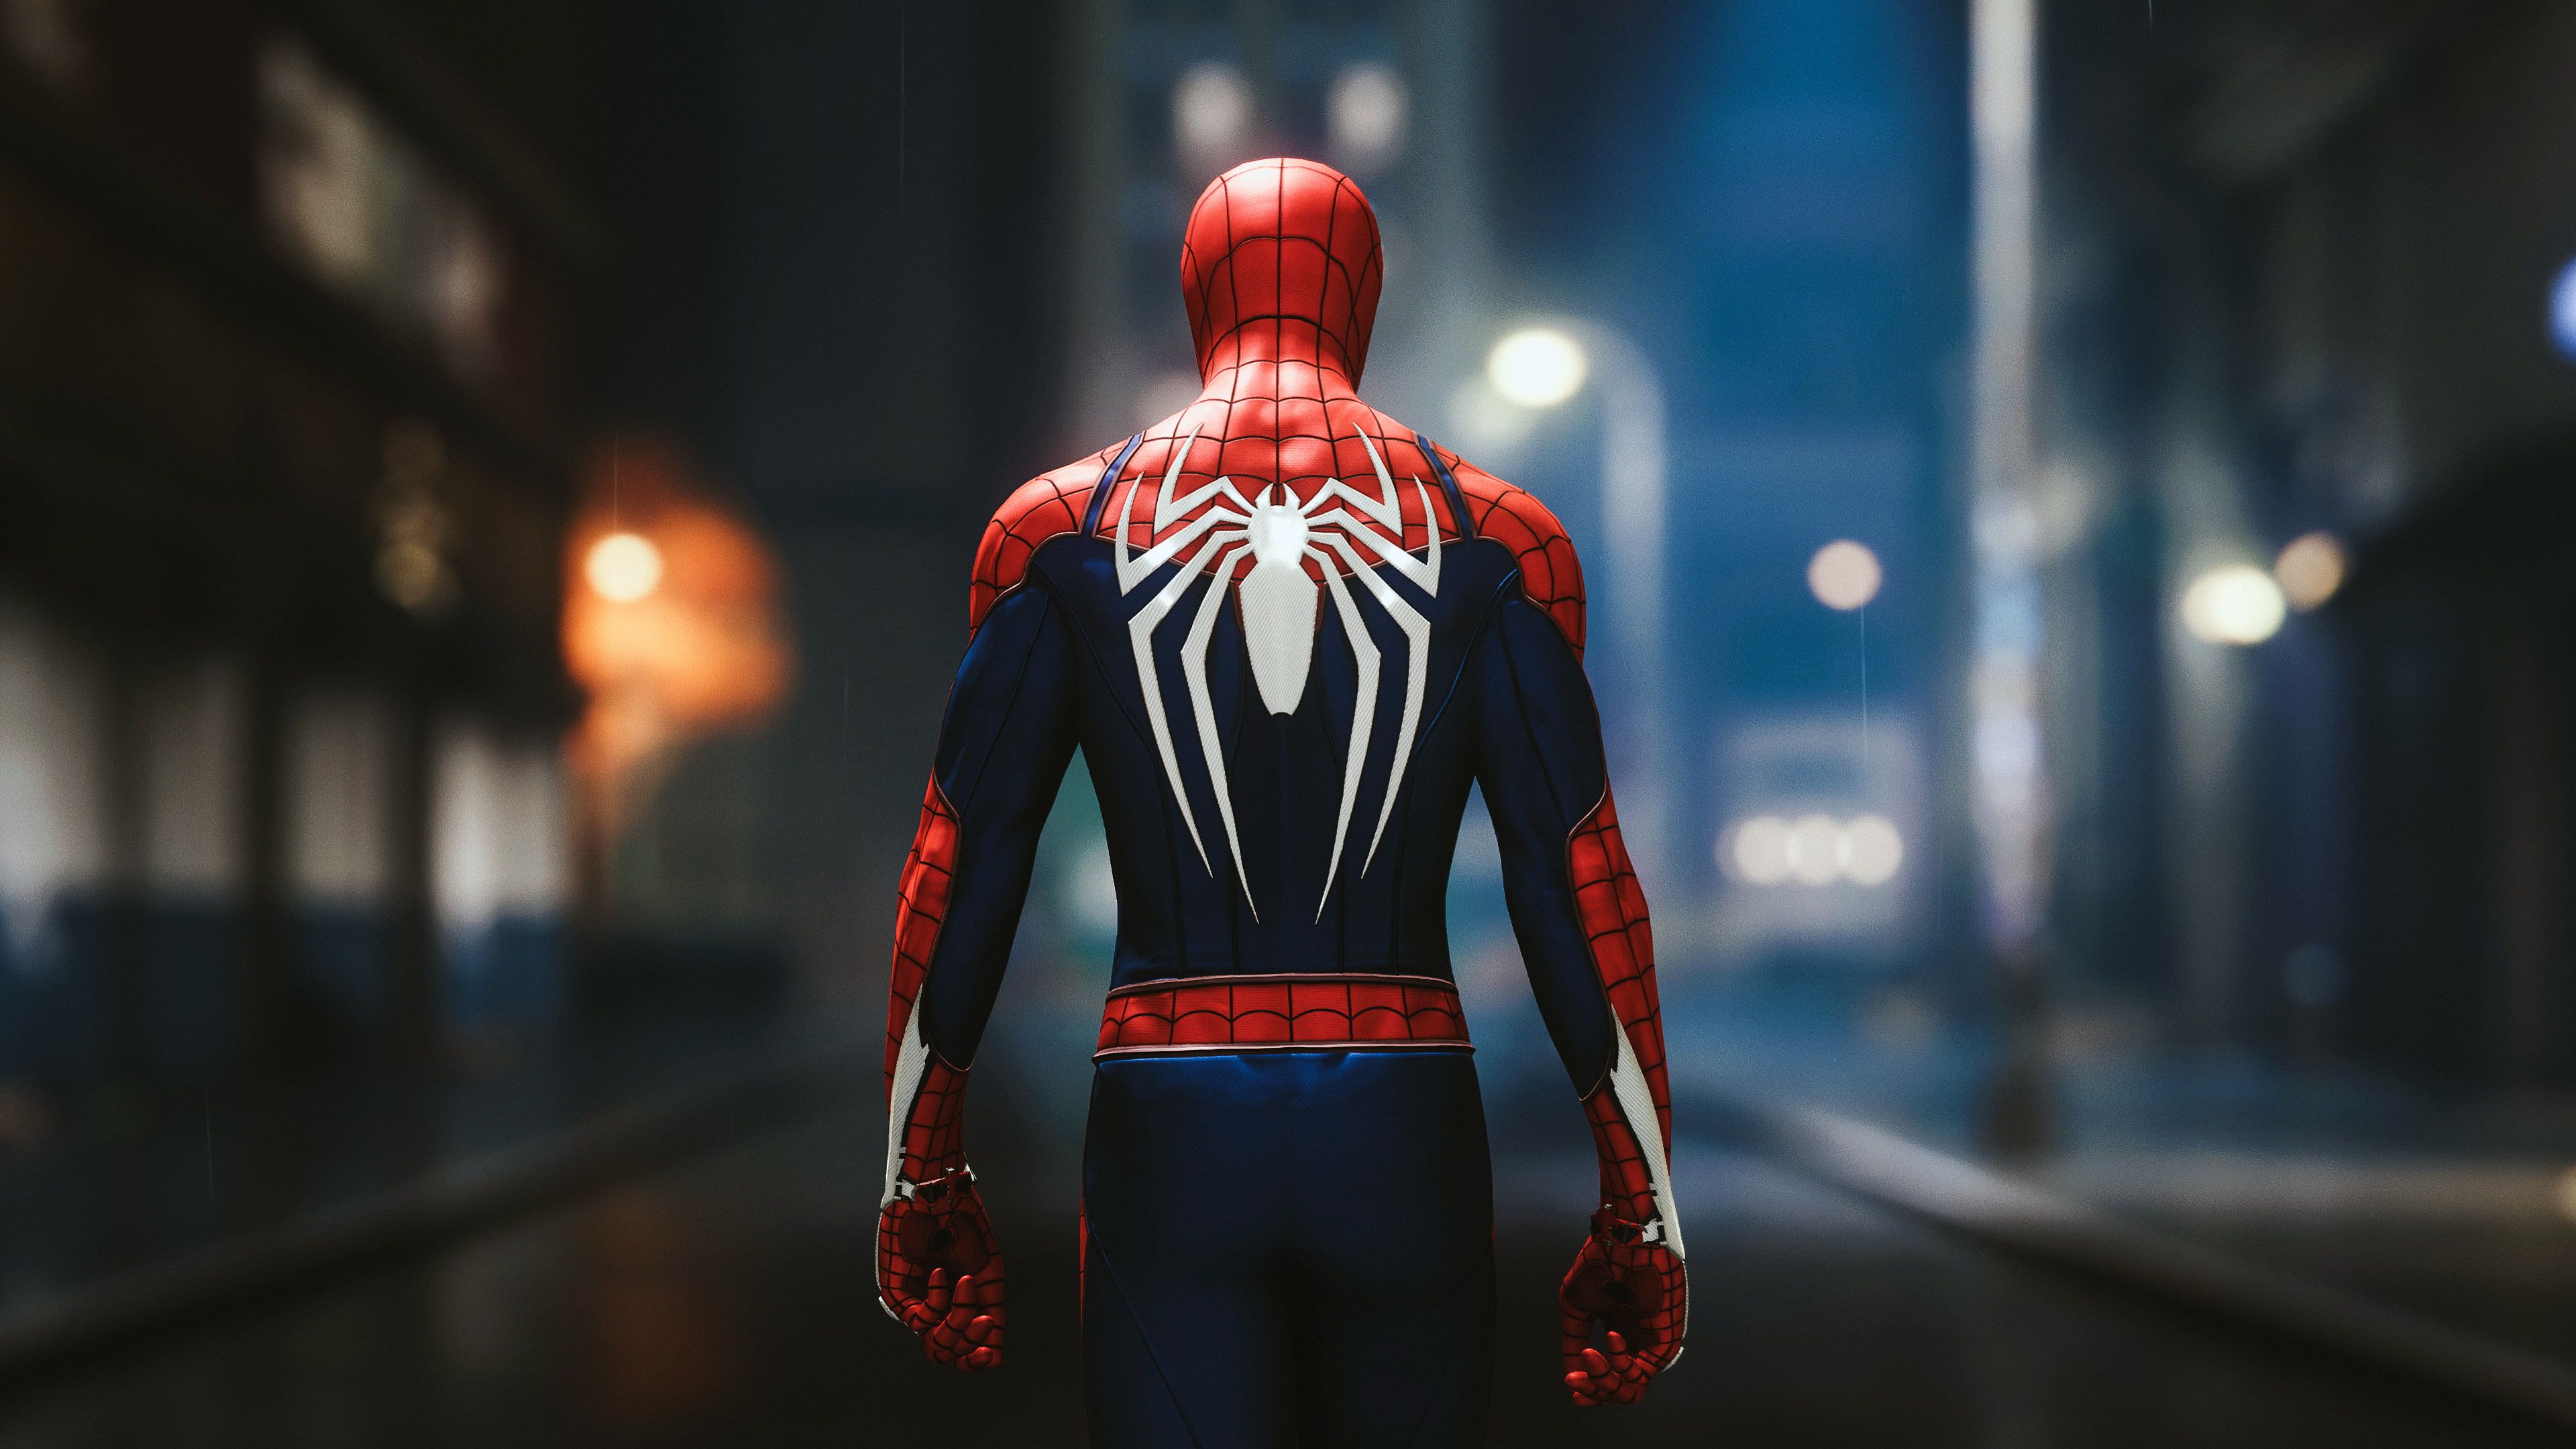 Spider Man Video Games Superhero Marvel Ics Rear